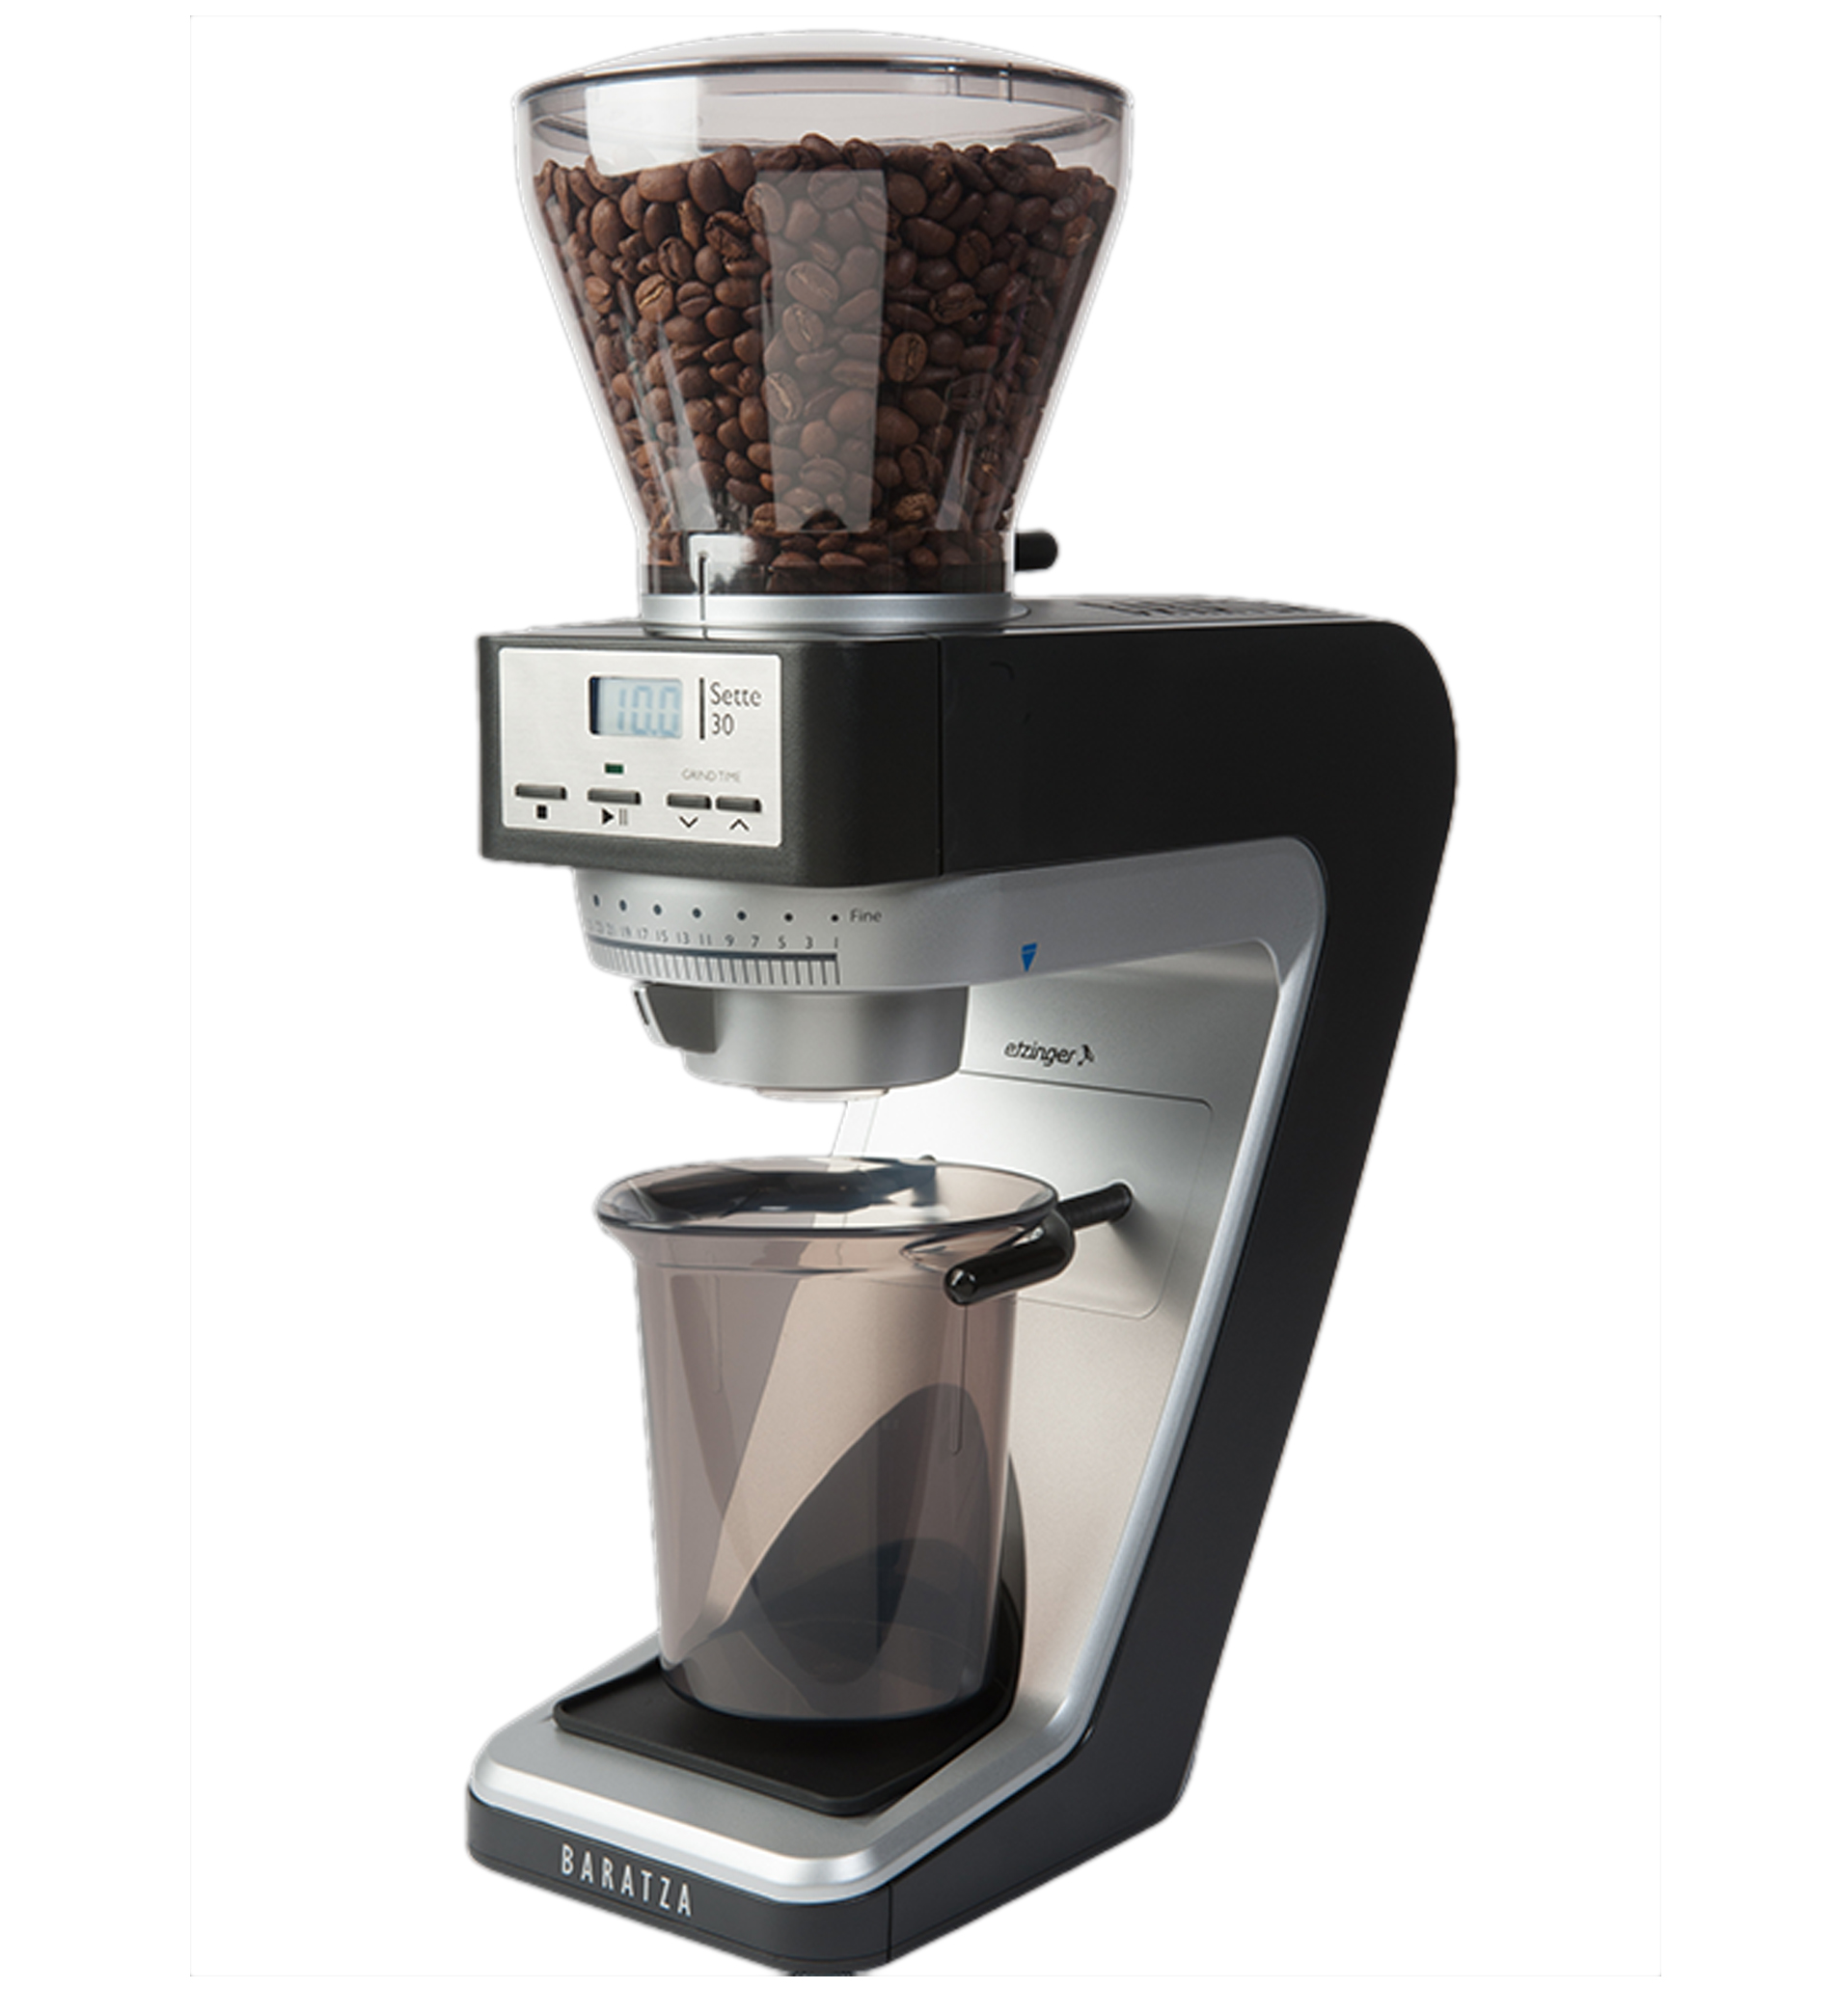 Sette 30 120v Coffee Grinder 1130